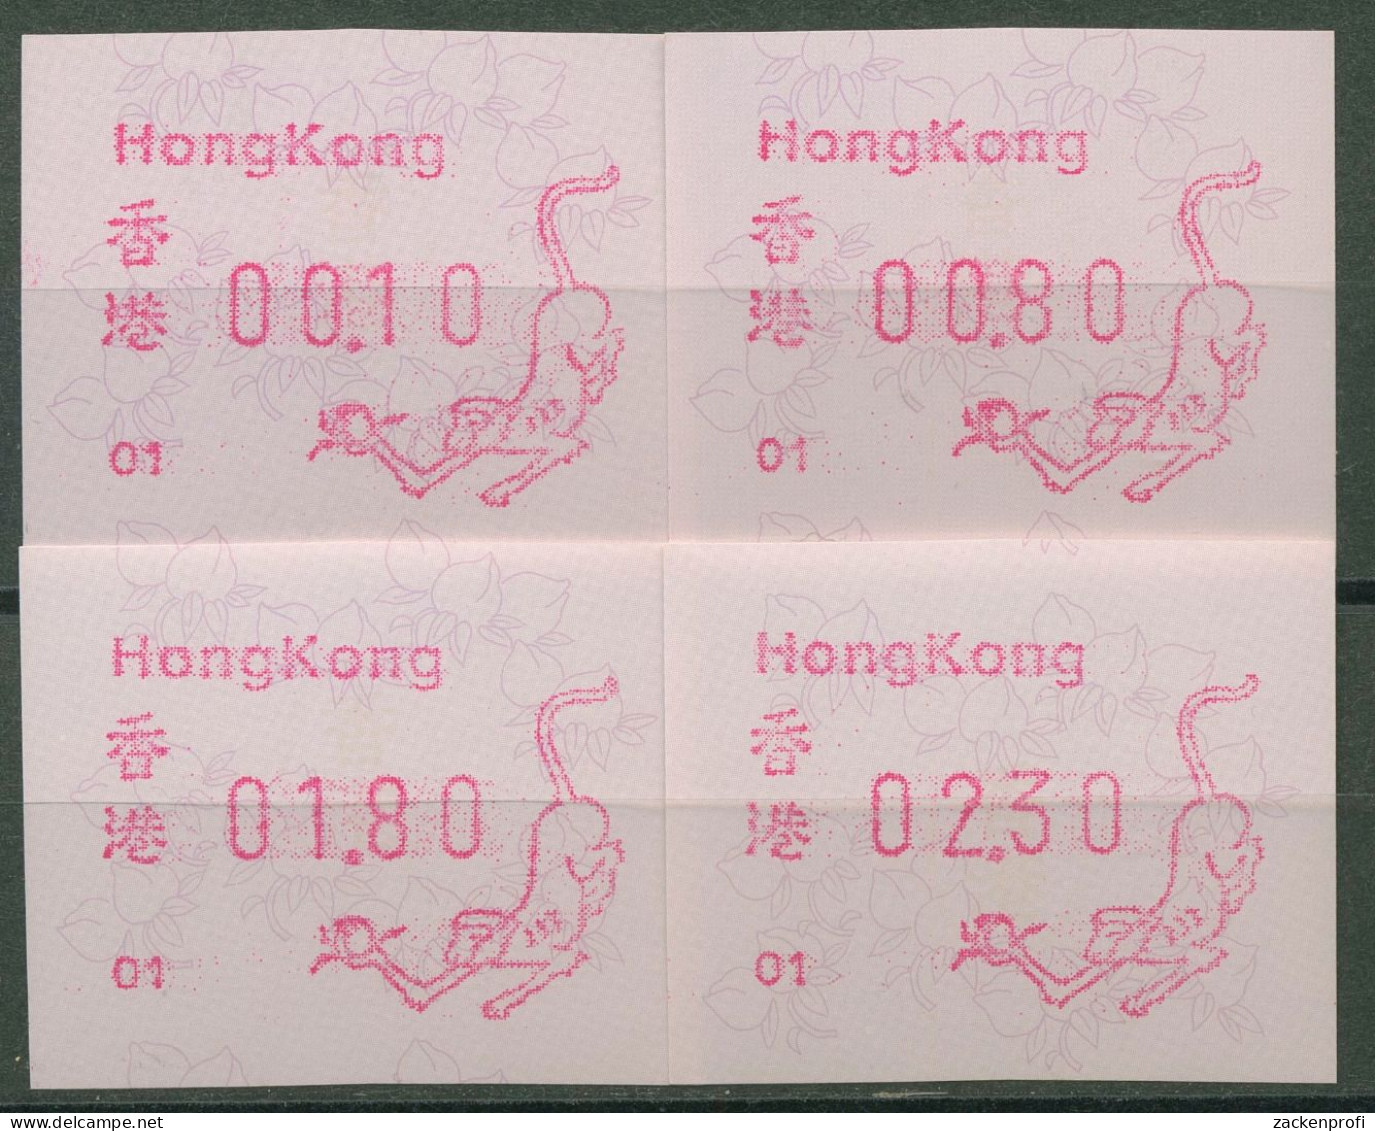 Hongkong 1992 Jahr Des Affen Automatenmarke 7.2 S1.1 Automat 01 Postfrisch - Distributori